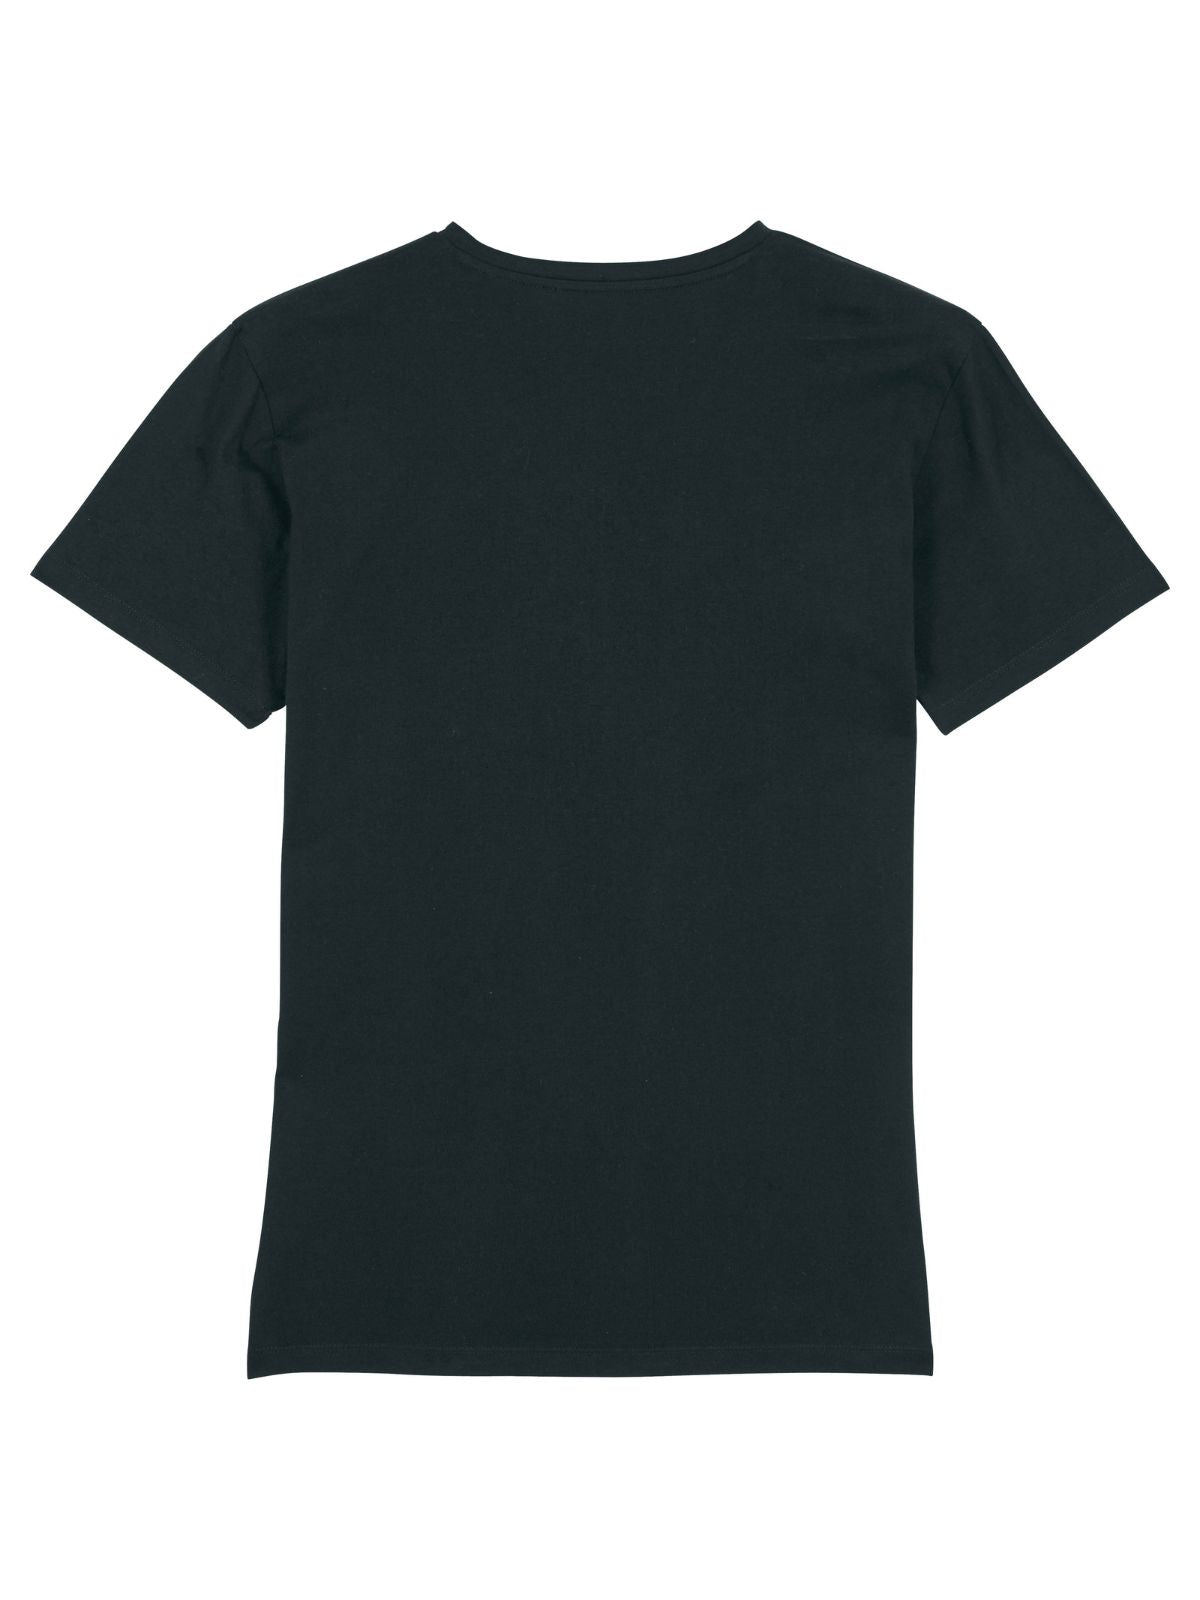 Herren T-Shirt V-Neck Black